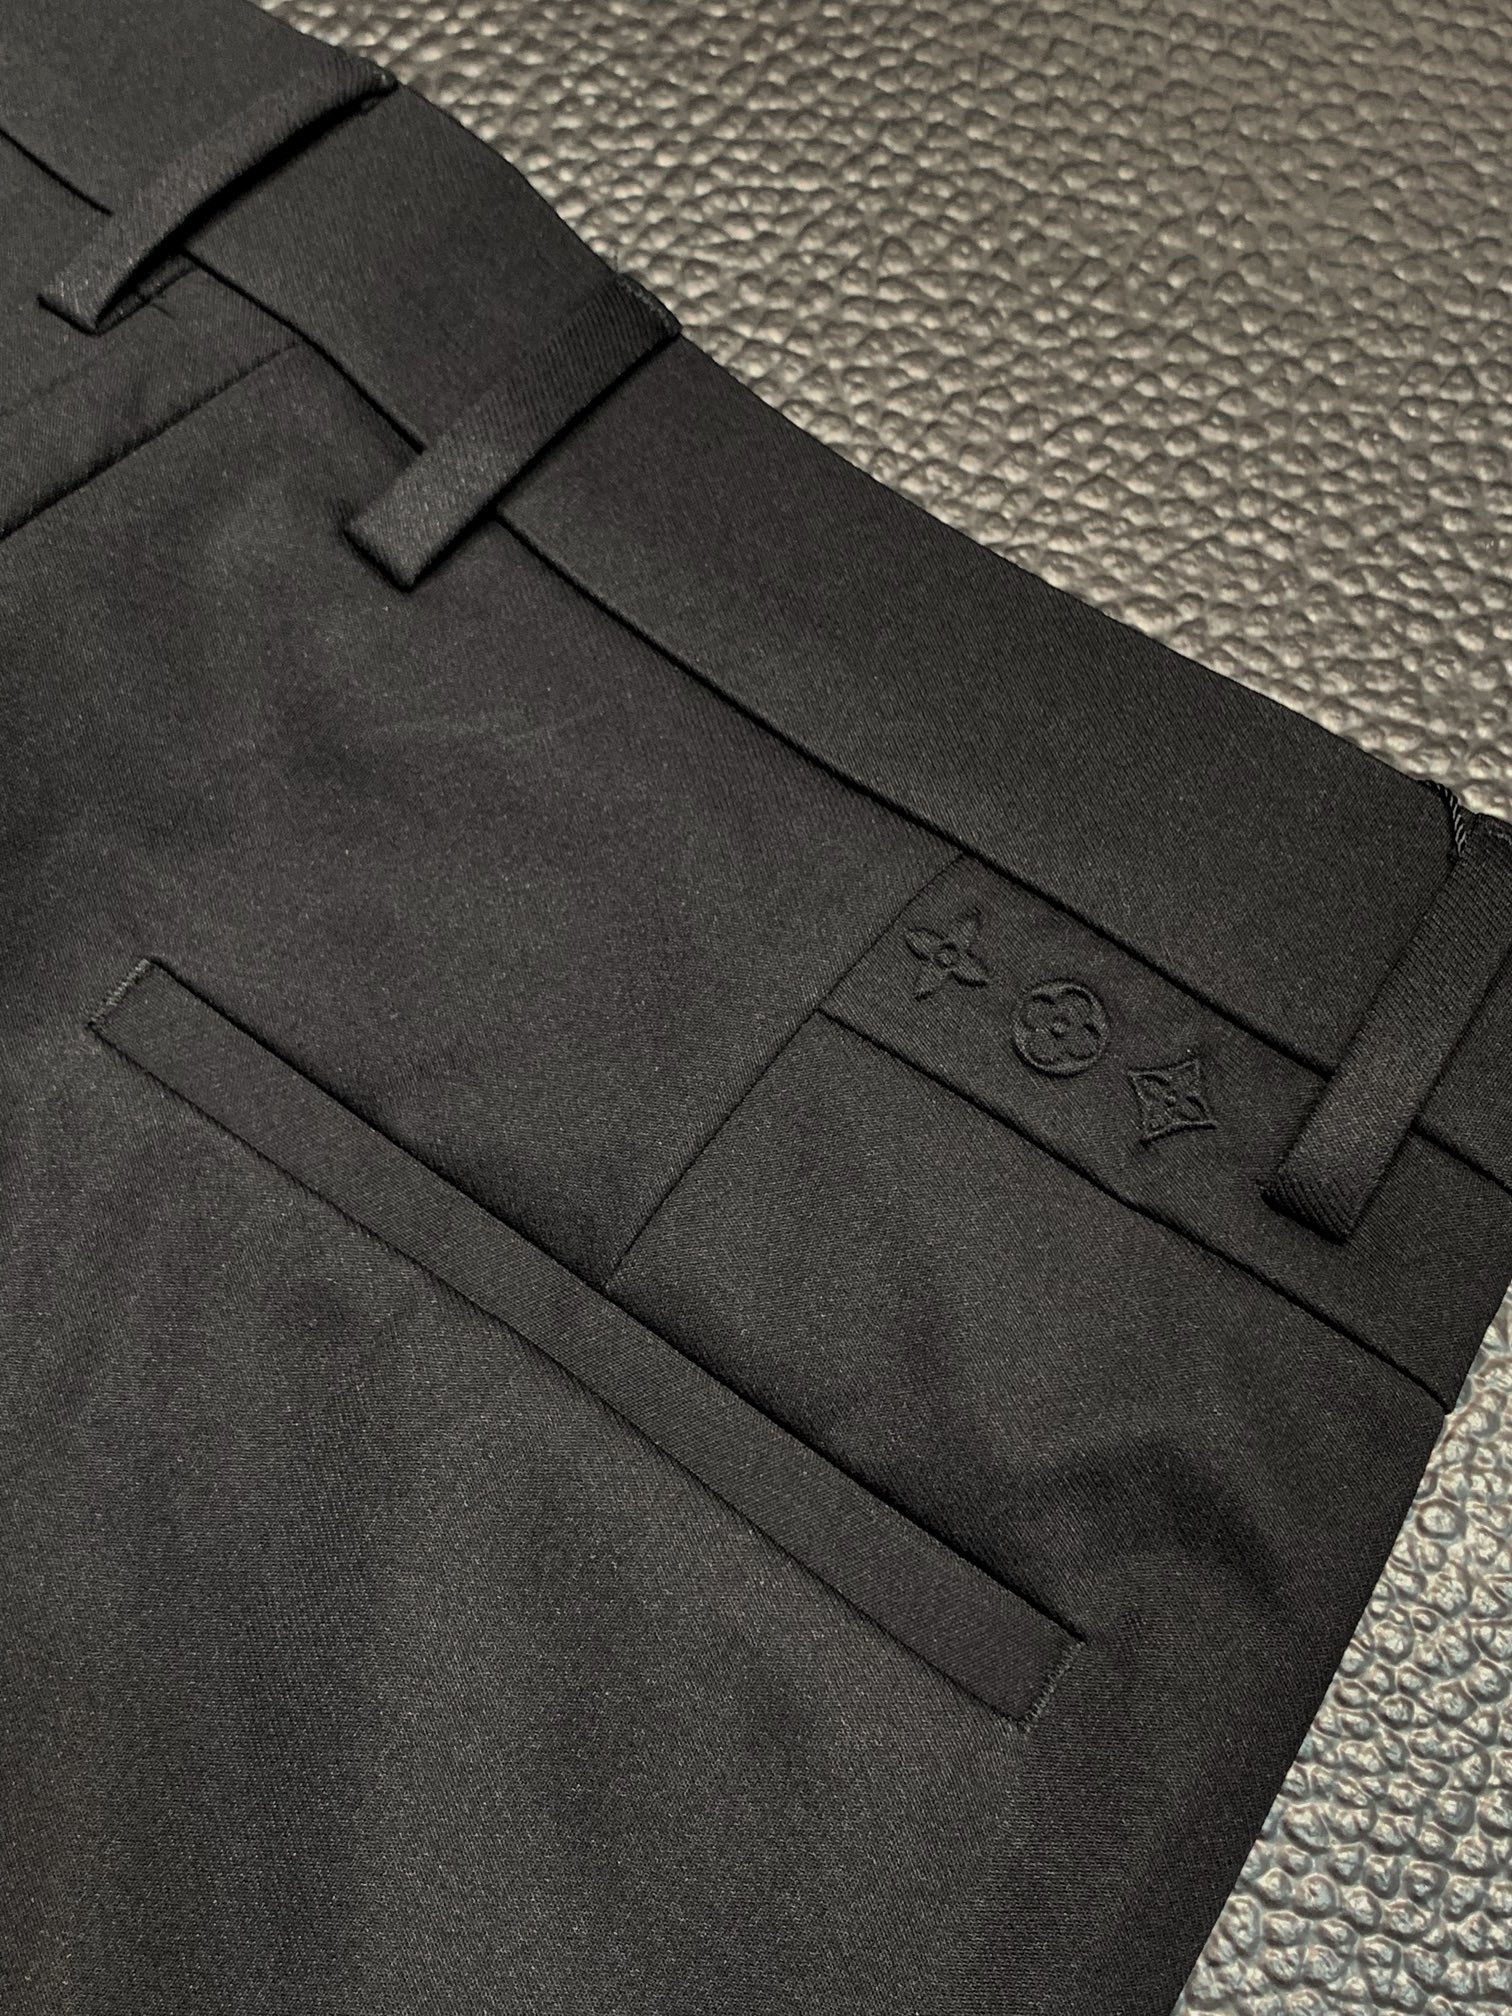 LV路易威登独家专供新款休闲西裤高端版本！专柜定制面料透气舒适度高细节无可挑剔品牌元素设计理念体现高品质